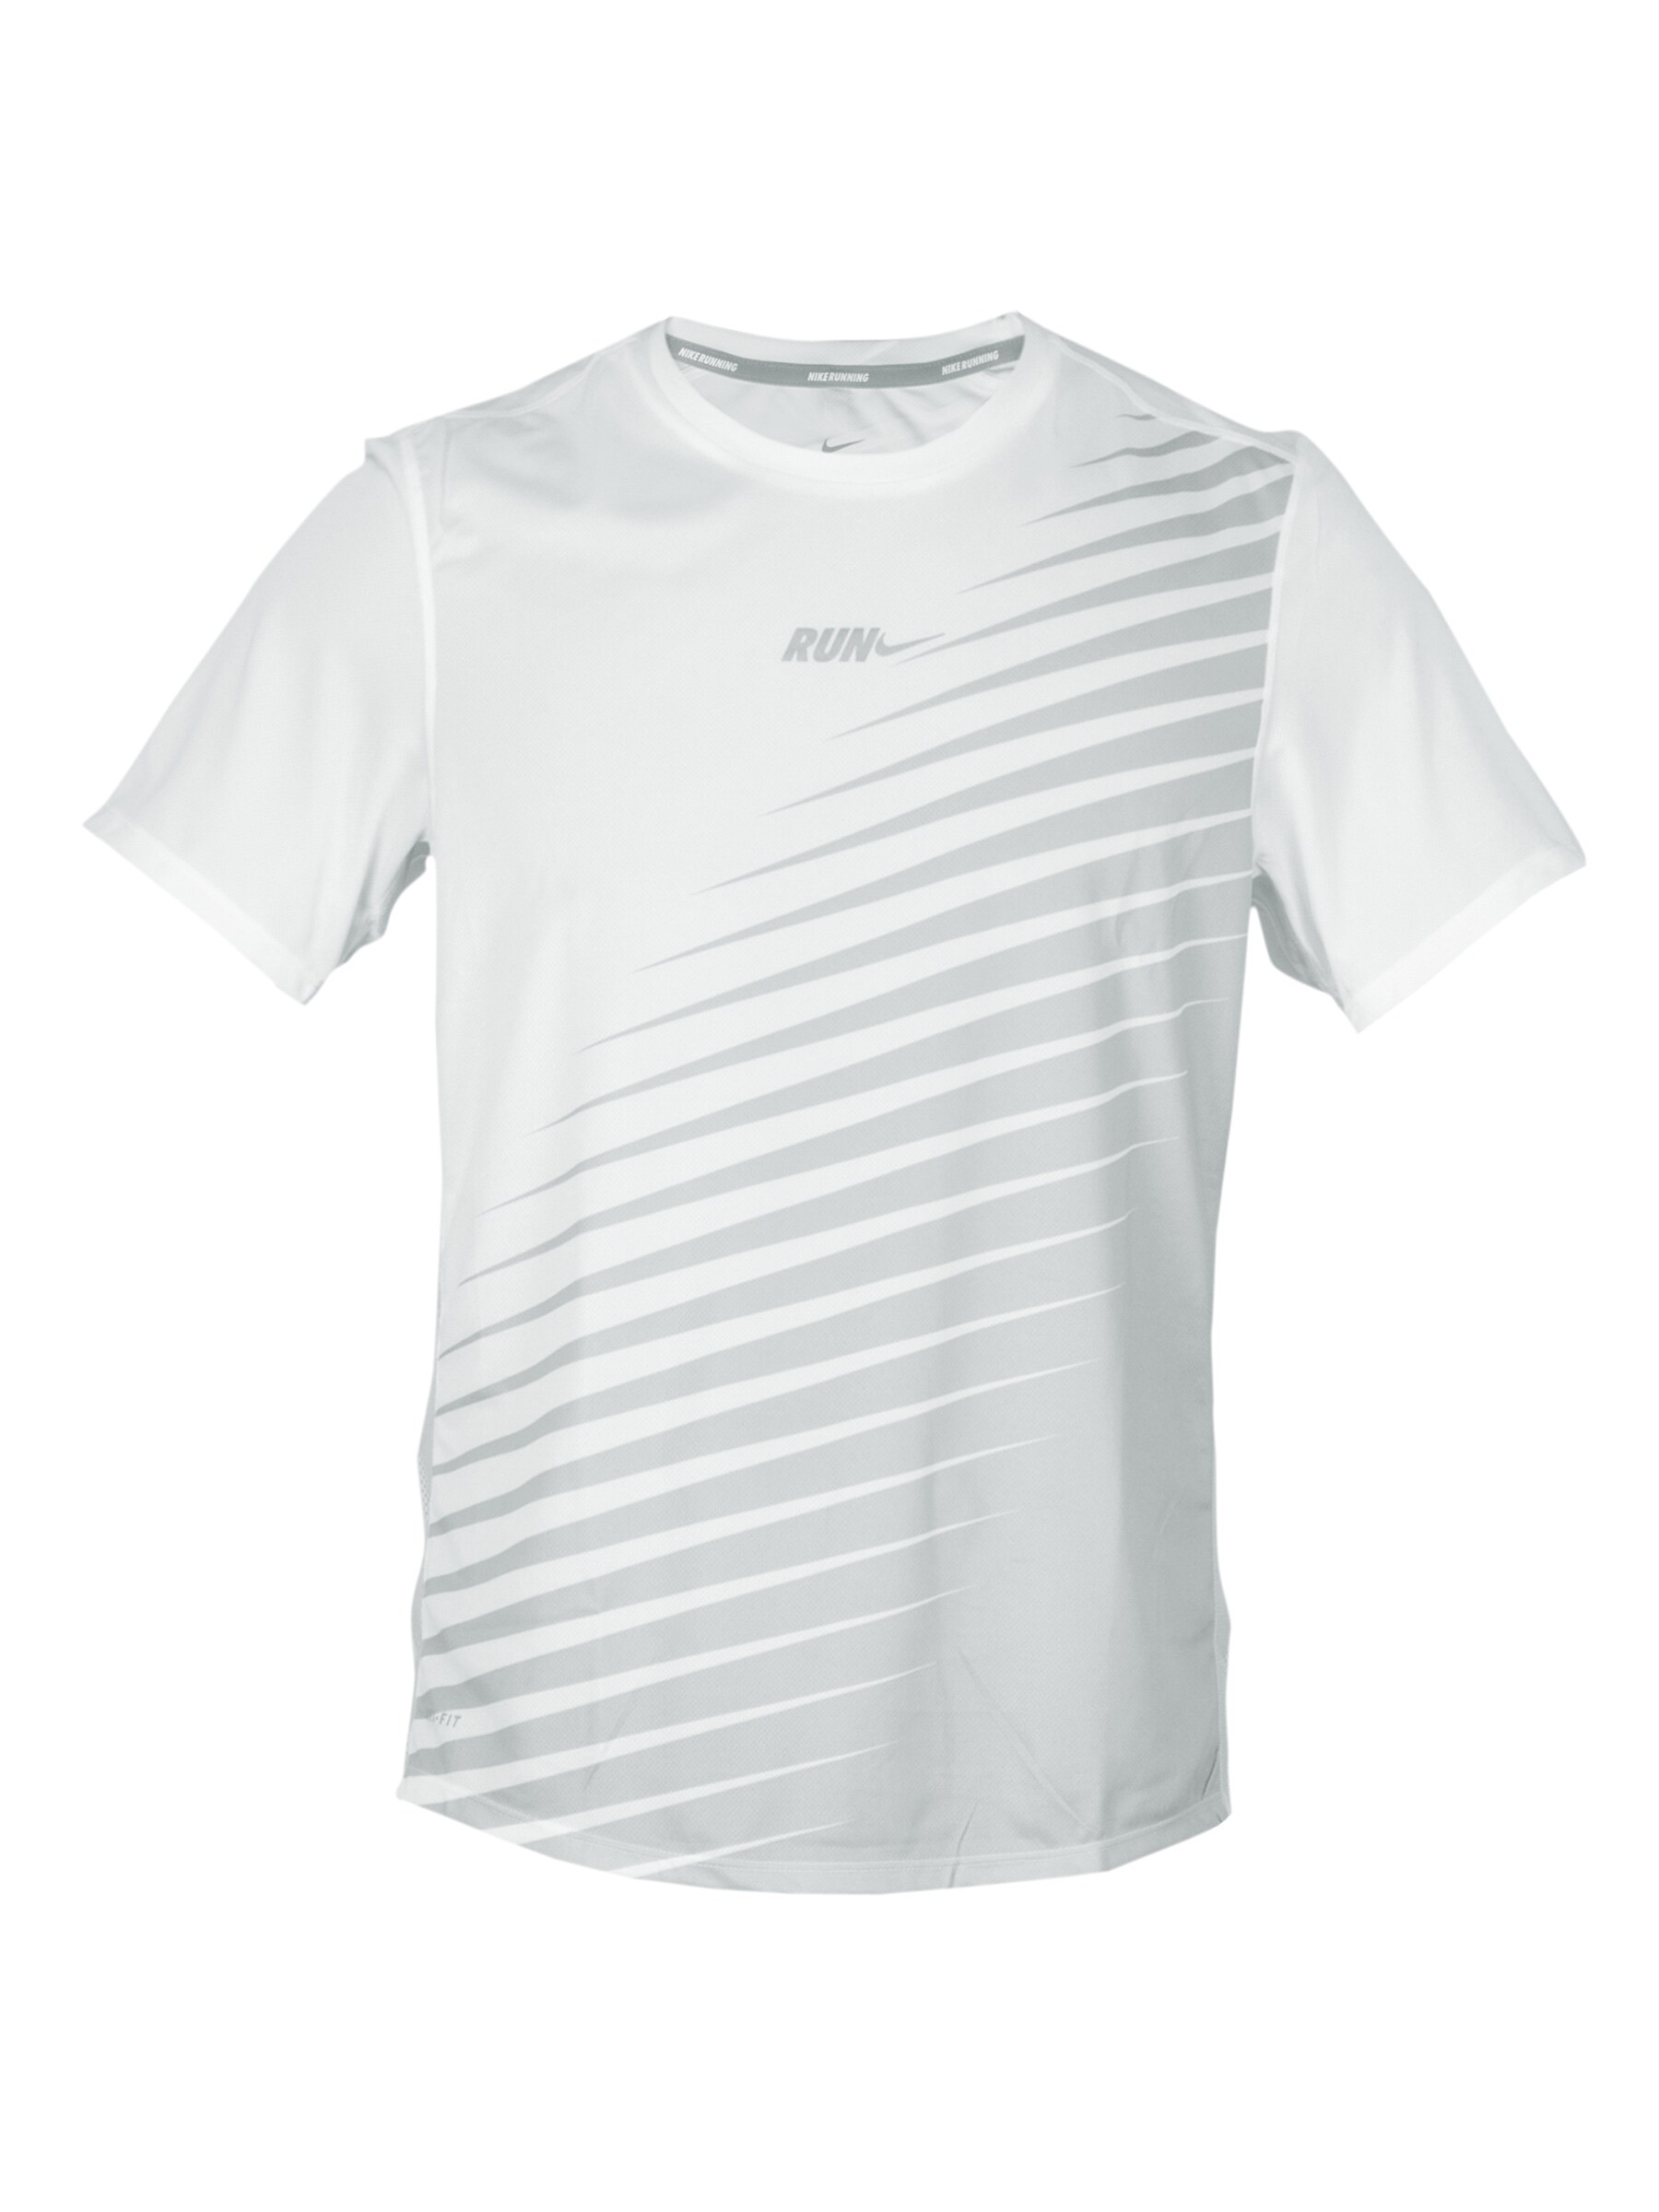 Nike Men Sublimated White T-shirt